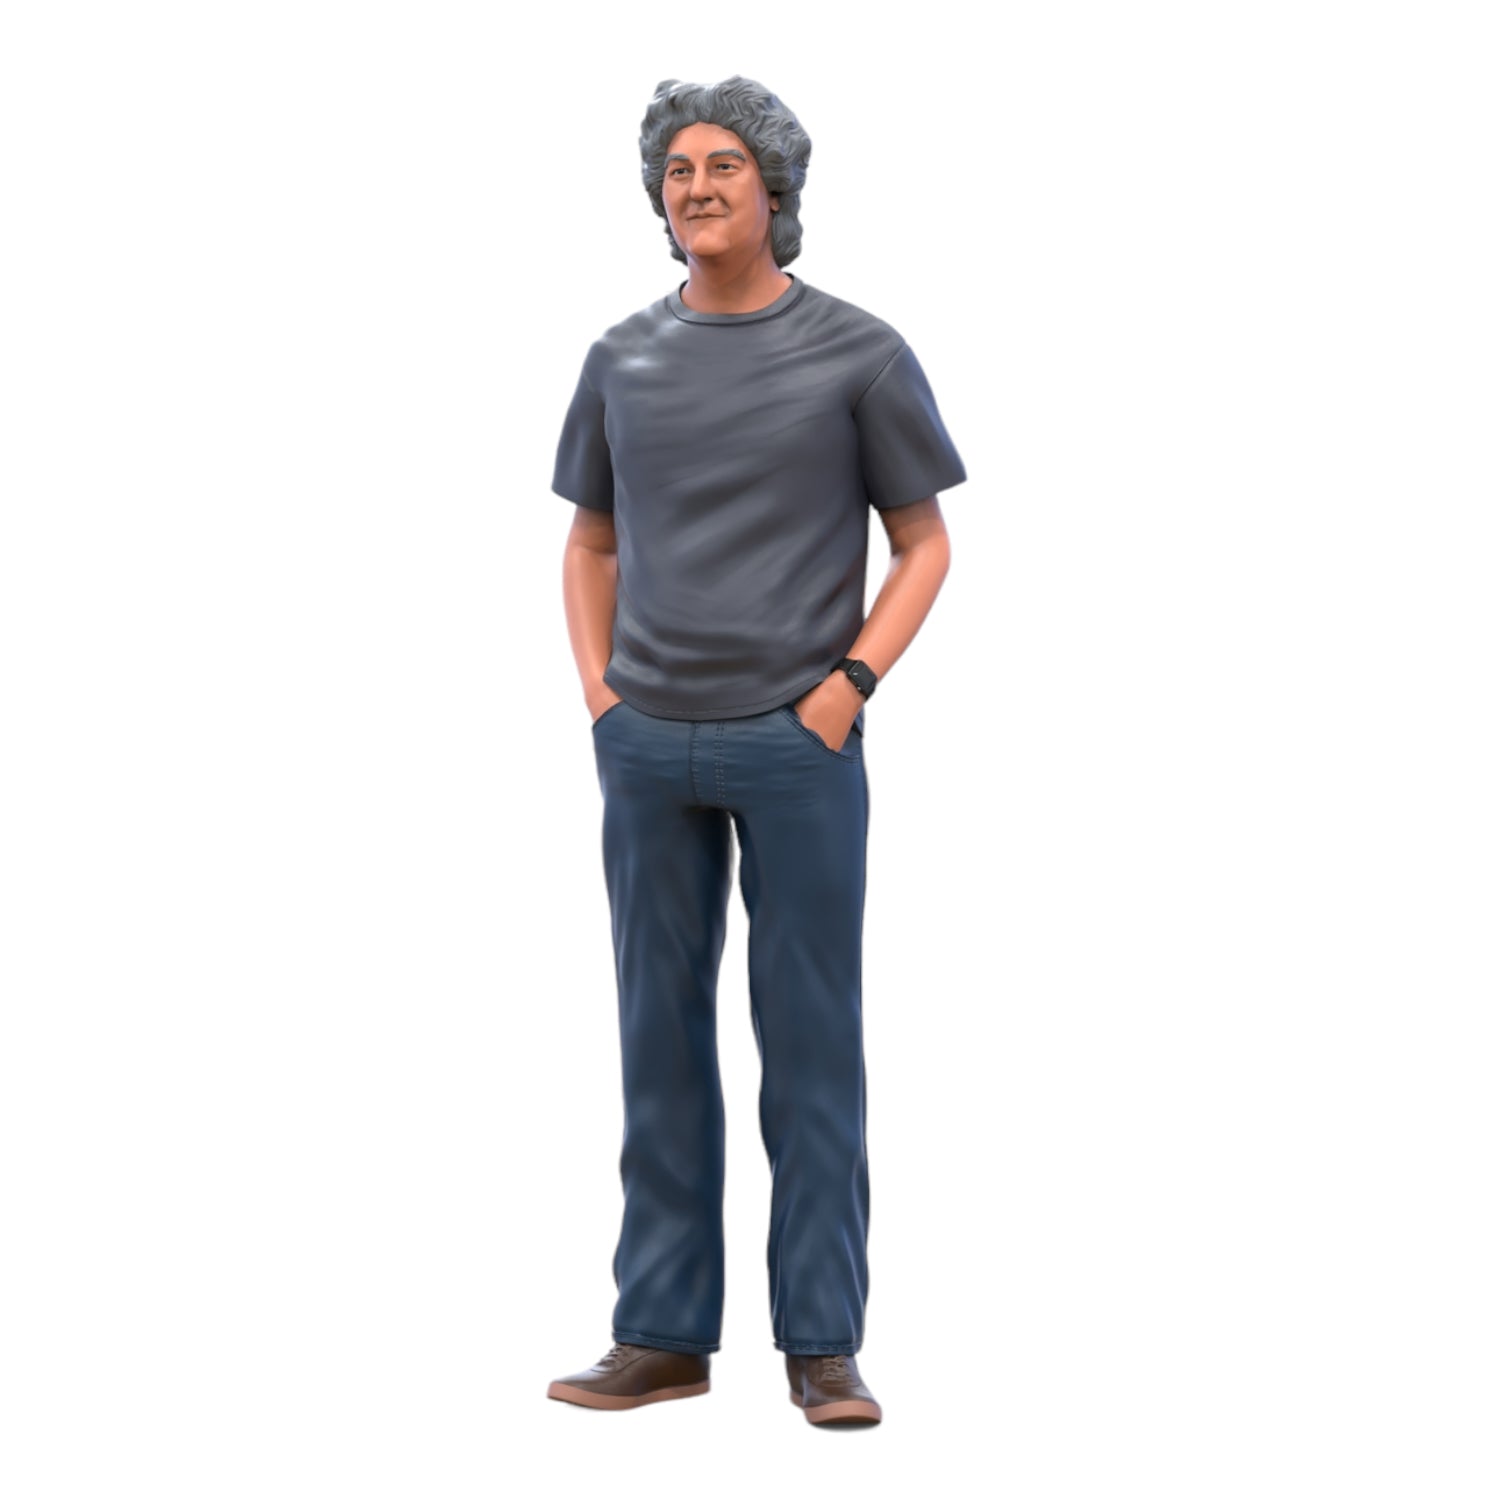 Produktfoto Diorama und Modellbau Miniatur Figur: Gewöhnlicher Mann 3